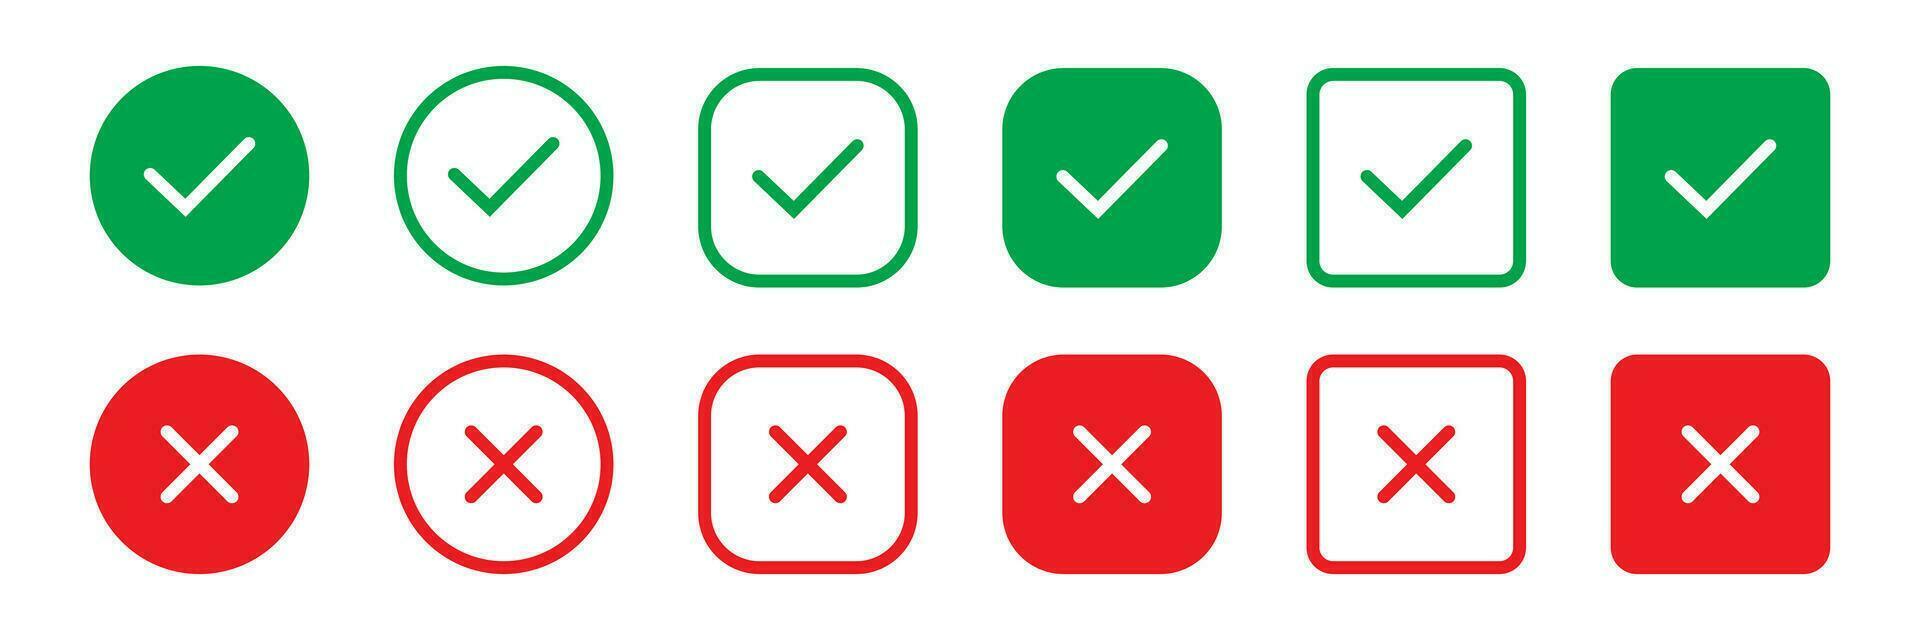 ensemble vert approbation vérifier marque et rouge traverser Icônes dans cercle et carré, liste de contrôle panneaux, plat coche approbation badge, isolé vecteur cocher symboles.